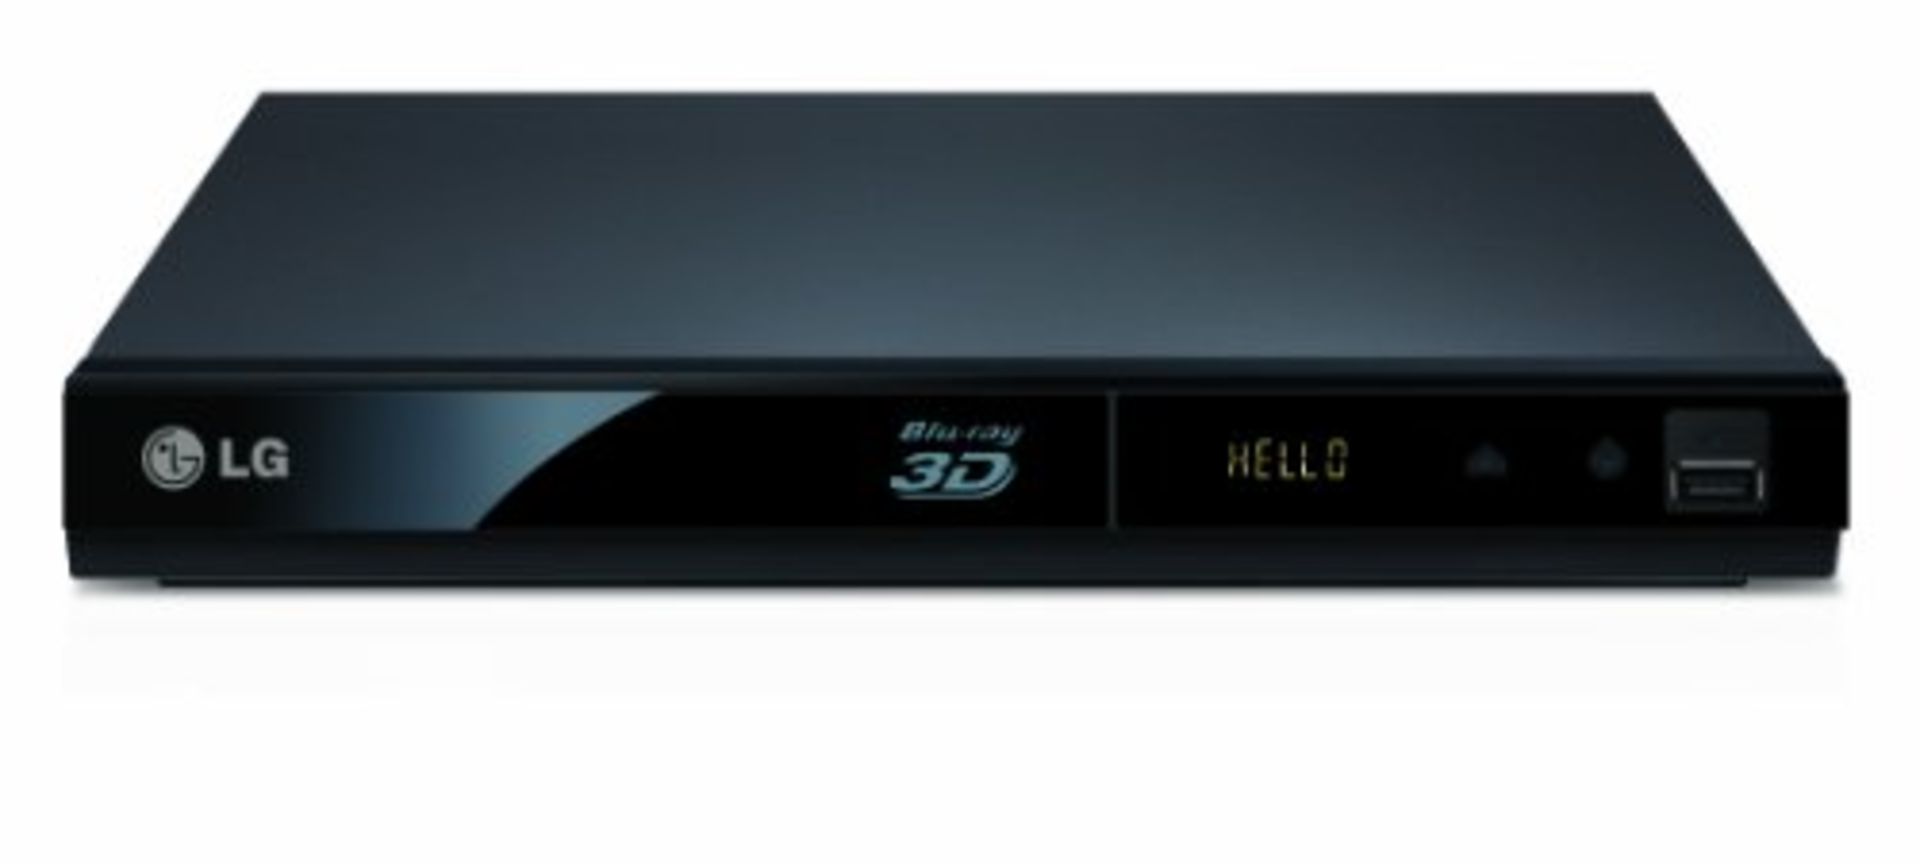 V Grade B LG BP325 3D Smart - Blu-Ray Player - Full HD 1080p Upscaling - USB X 2 YOUR BID PRICE TO